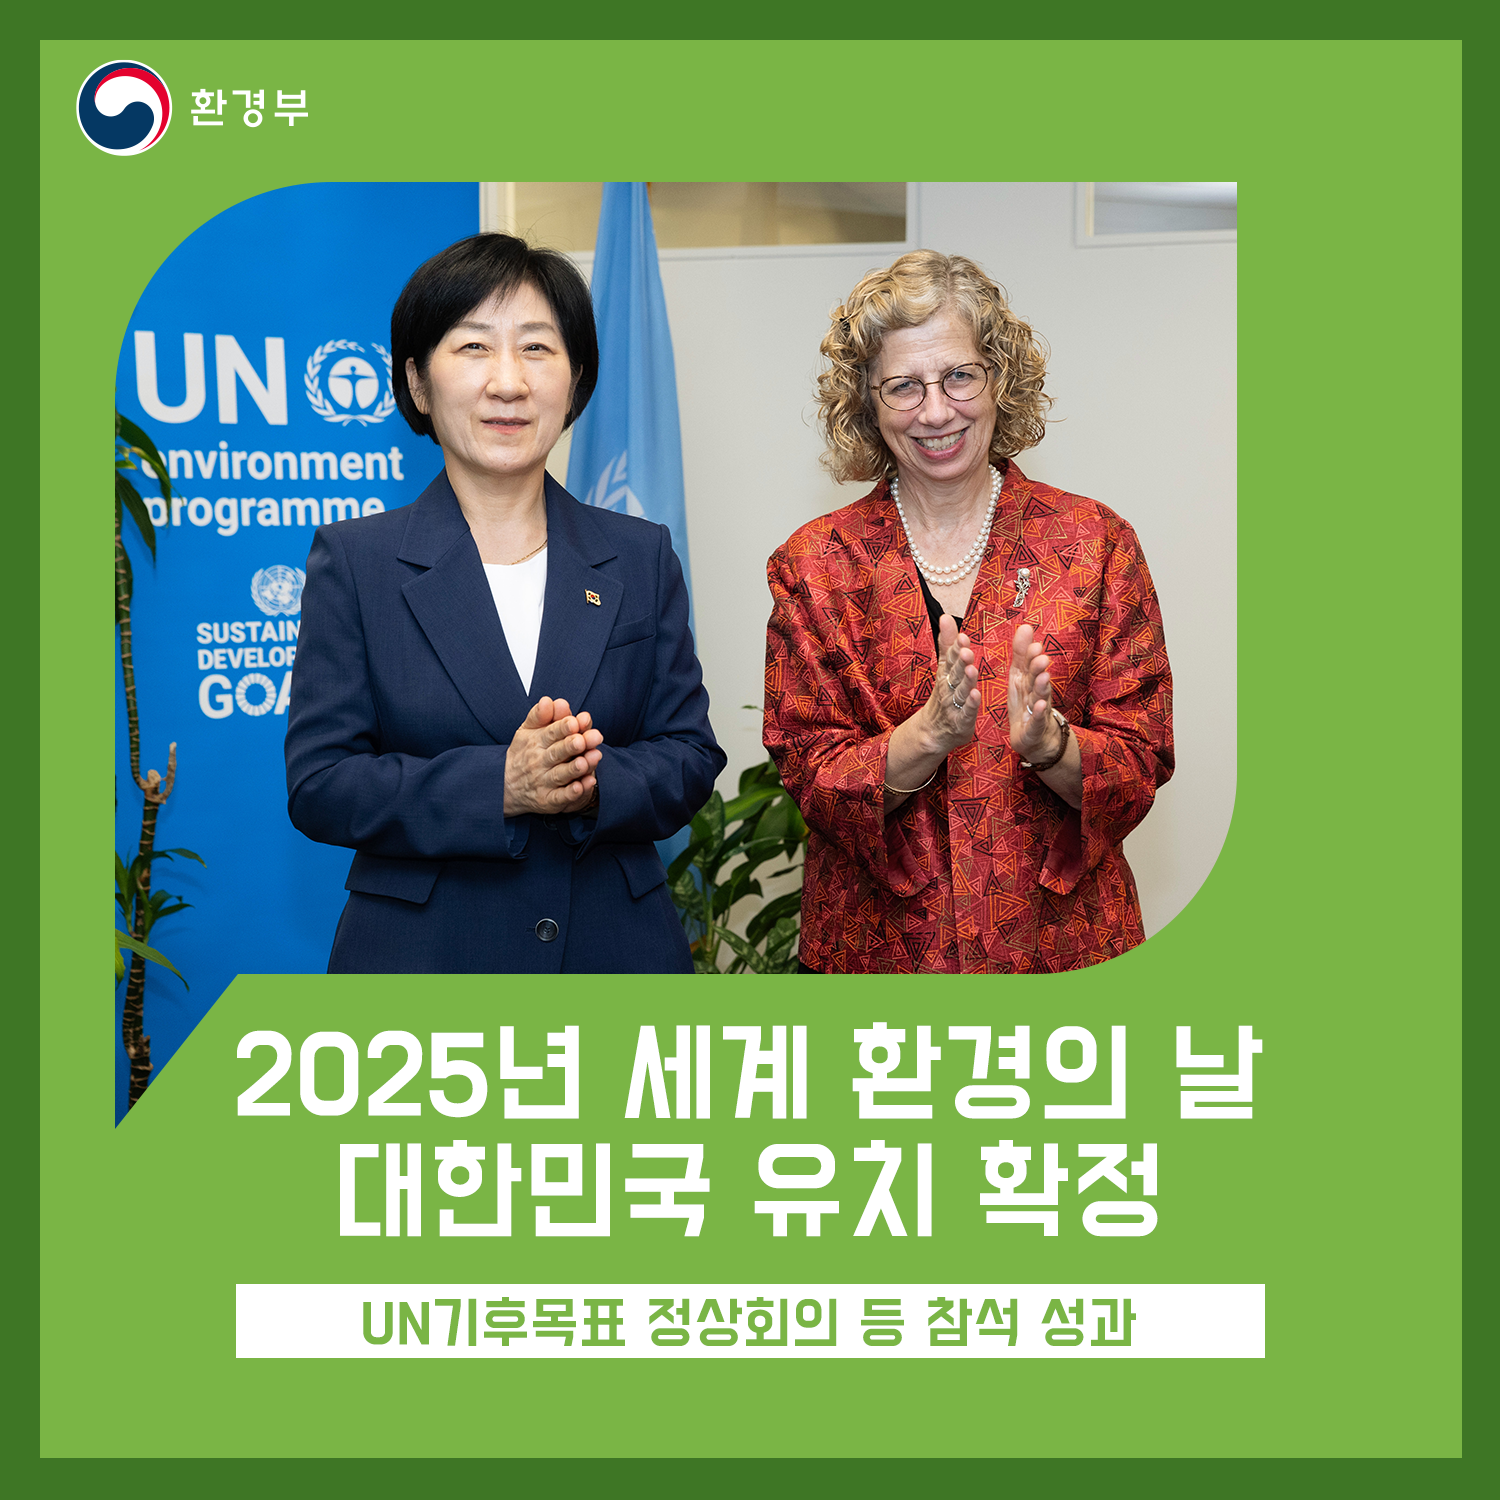 환경부
2025년 세계 환경의 날 대한민국 유치 확정
UN기후목표 정상회의 등 참석 성과